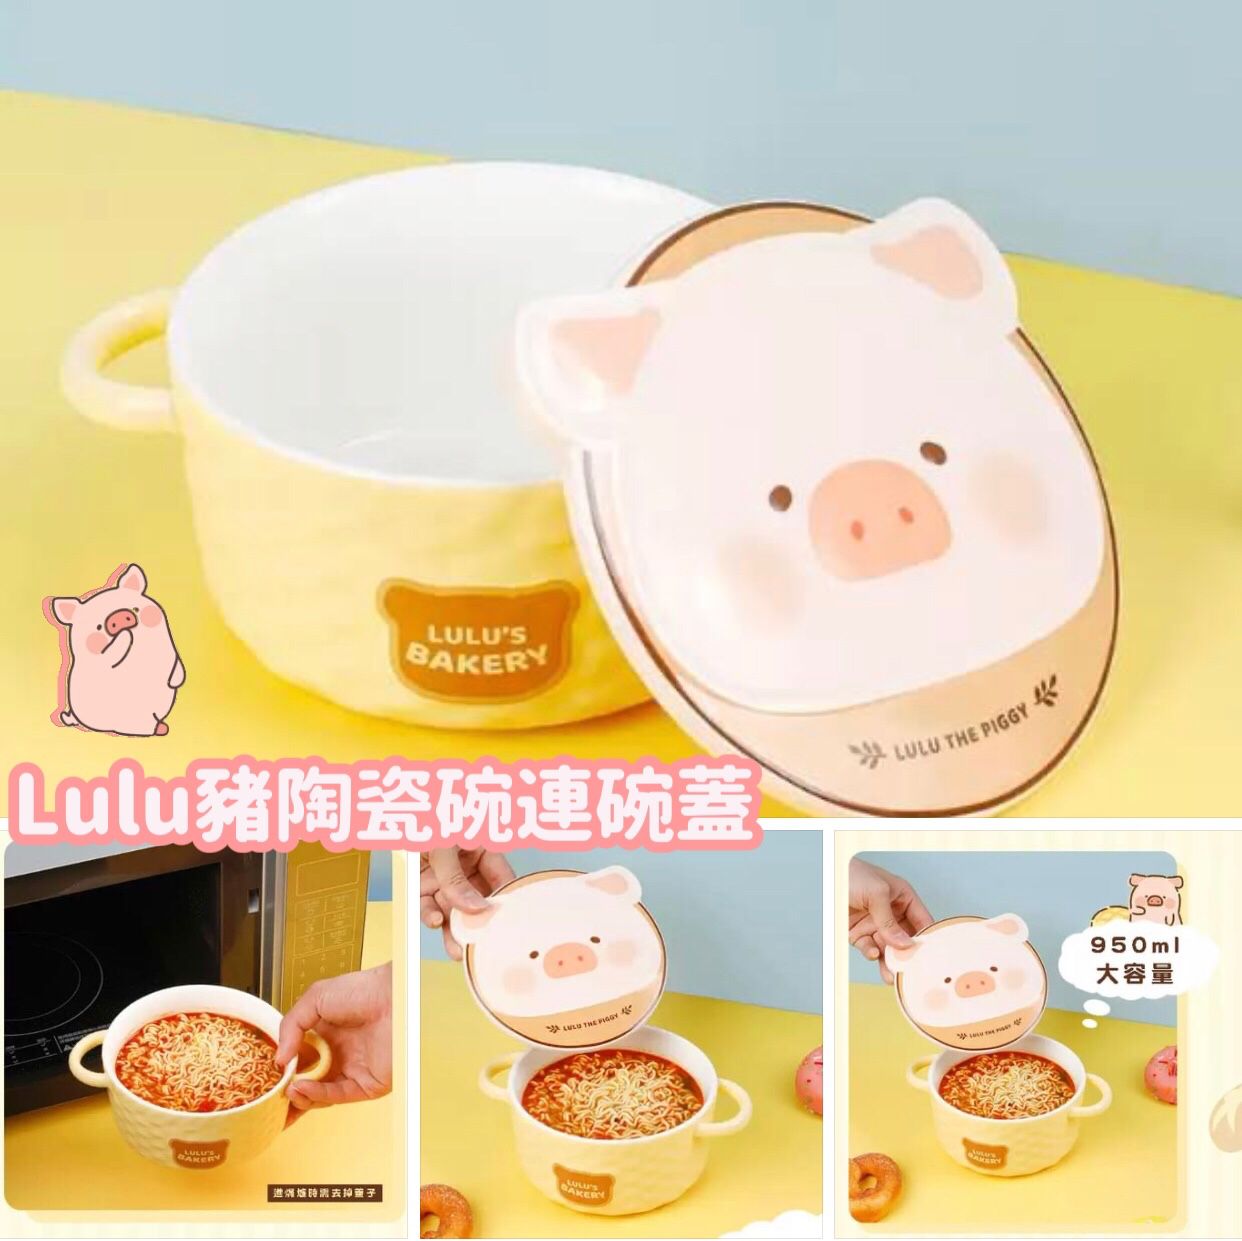 Lulu豬陶瓷碗連碗蓋